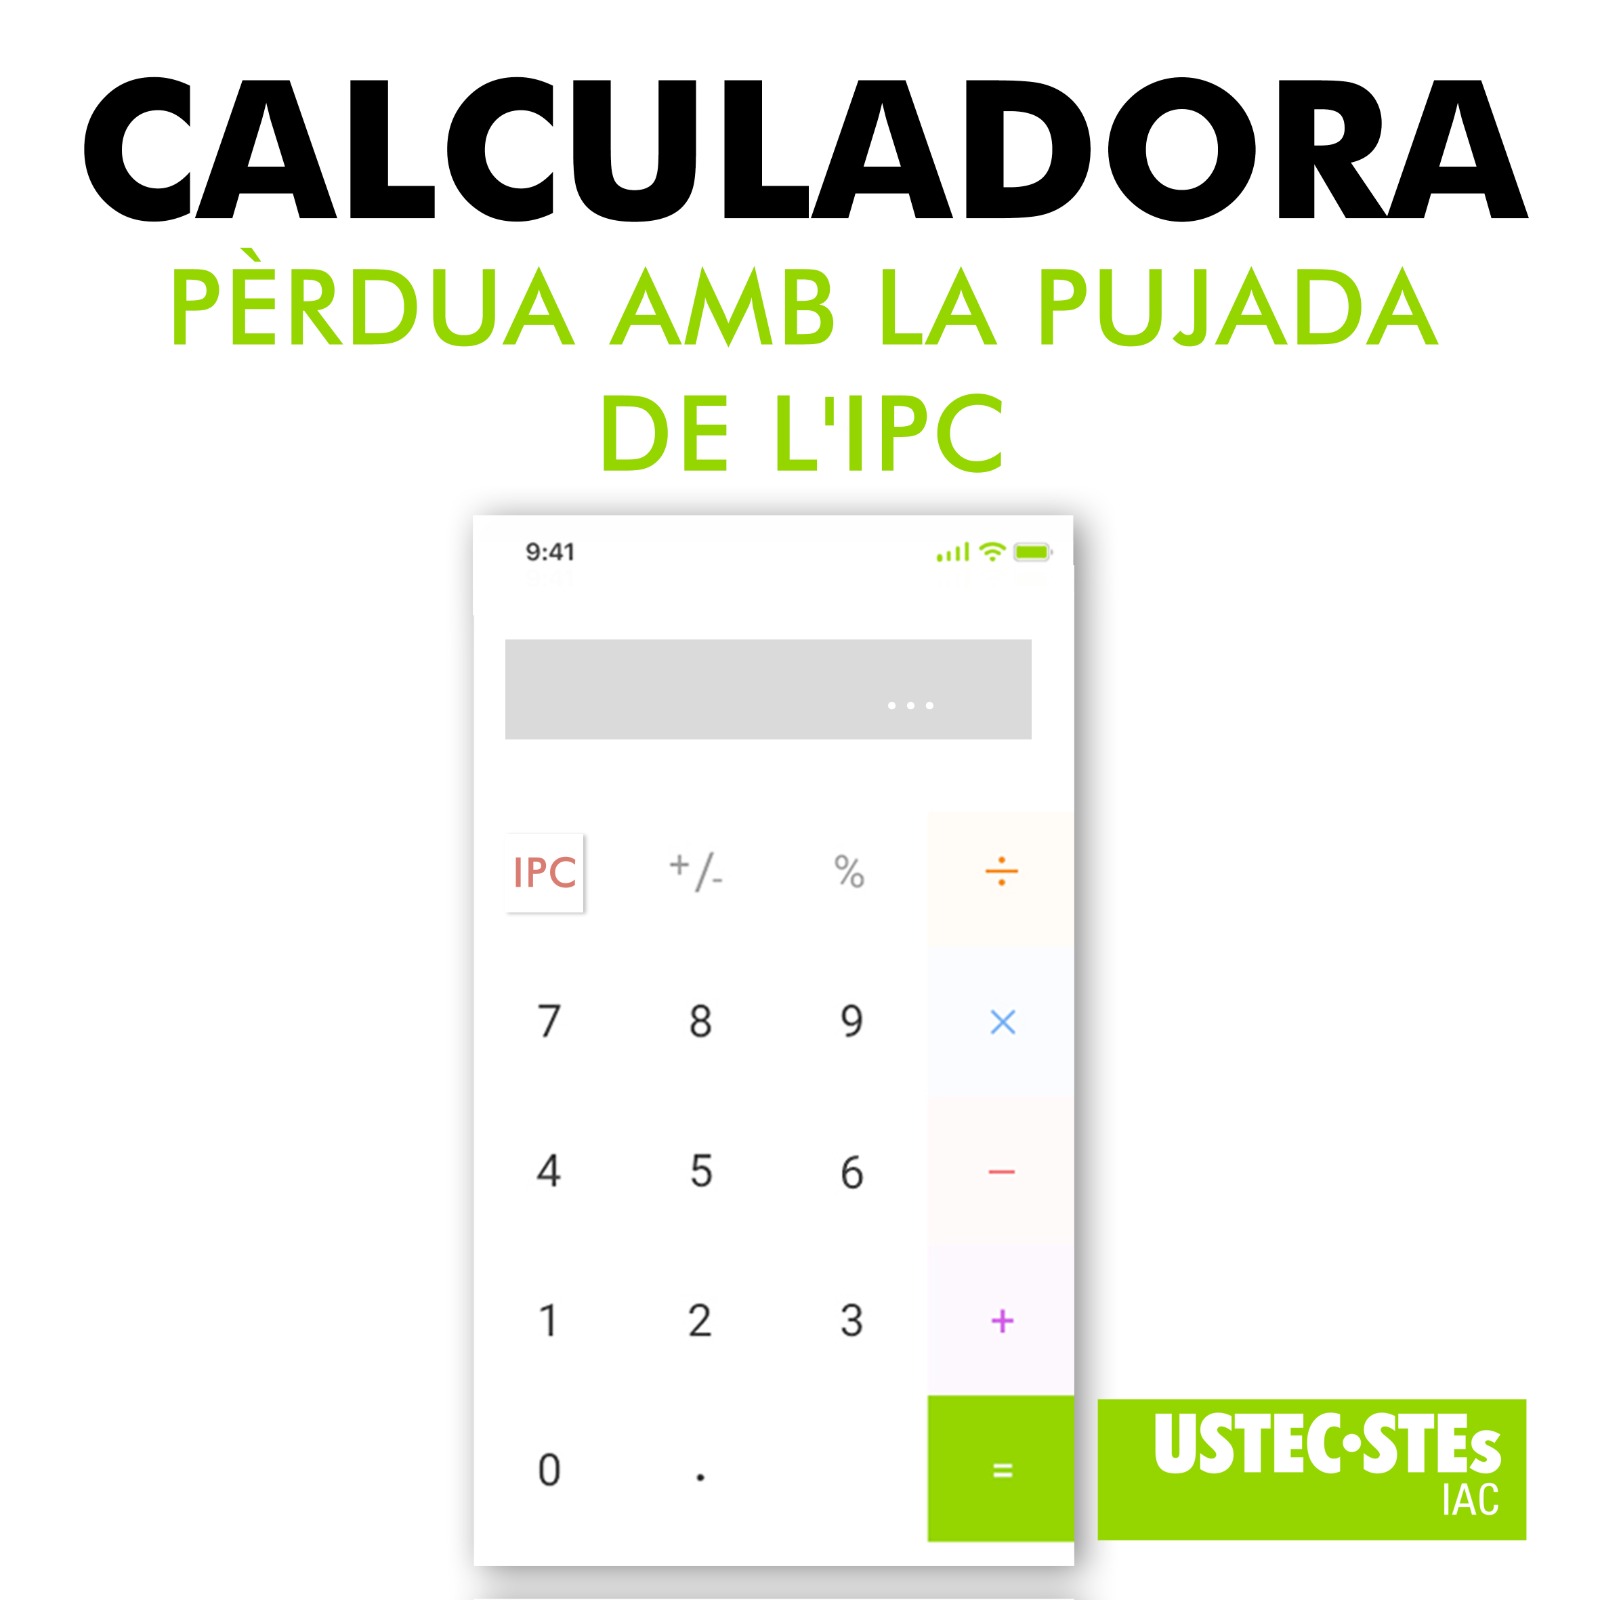 calculadora-perdua-ipc